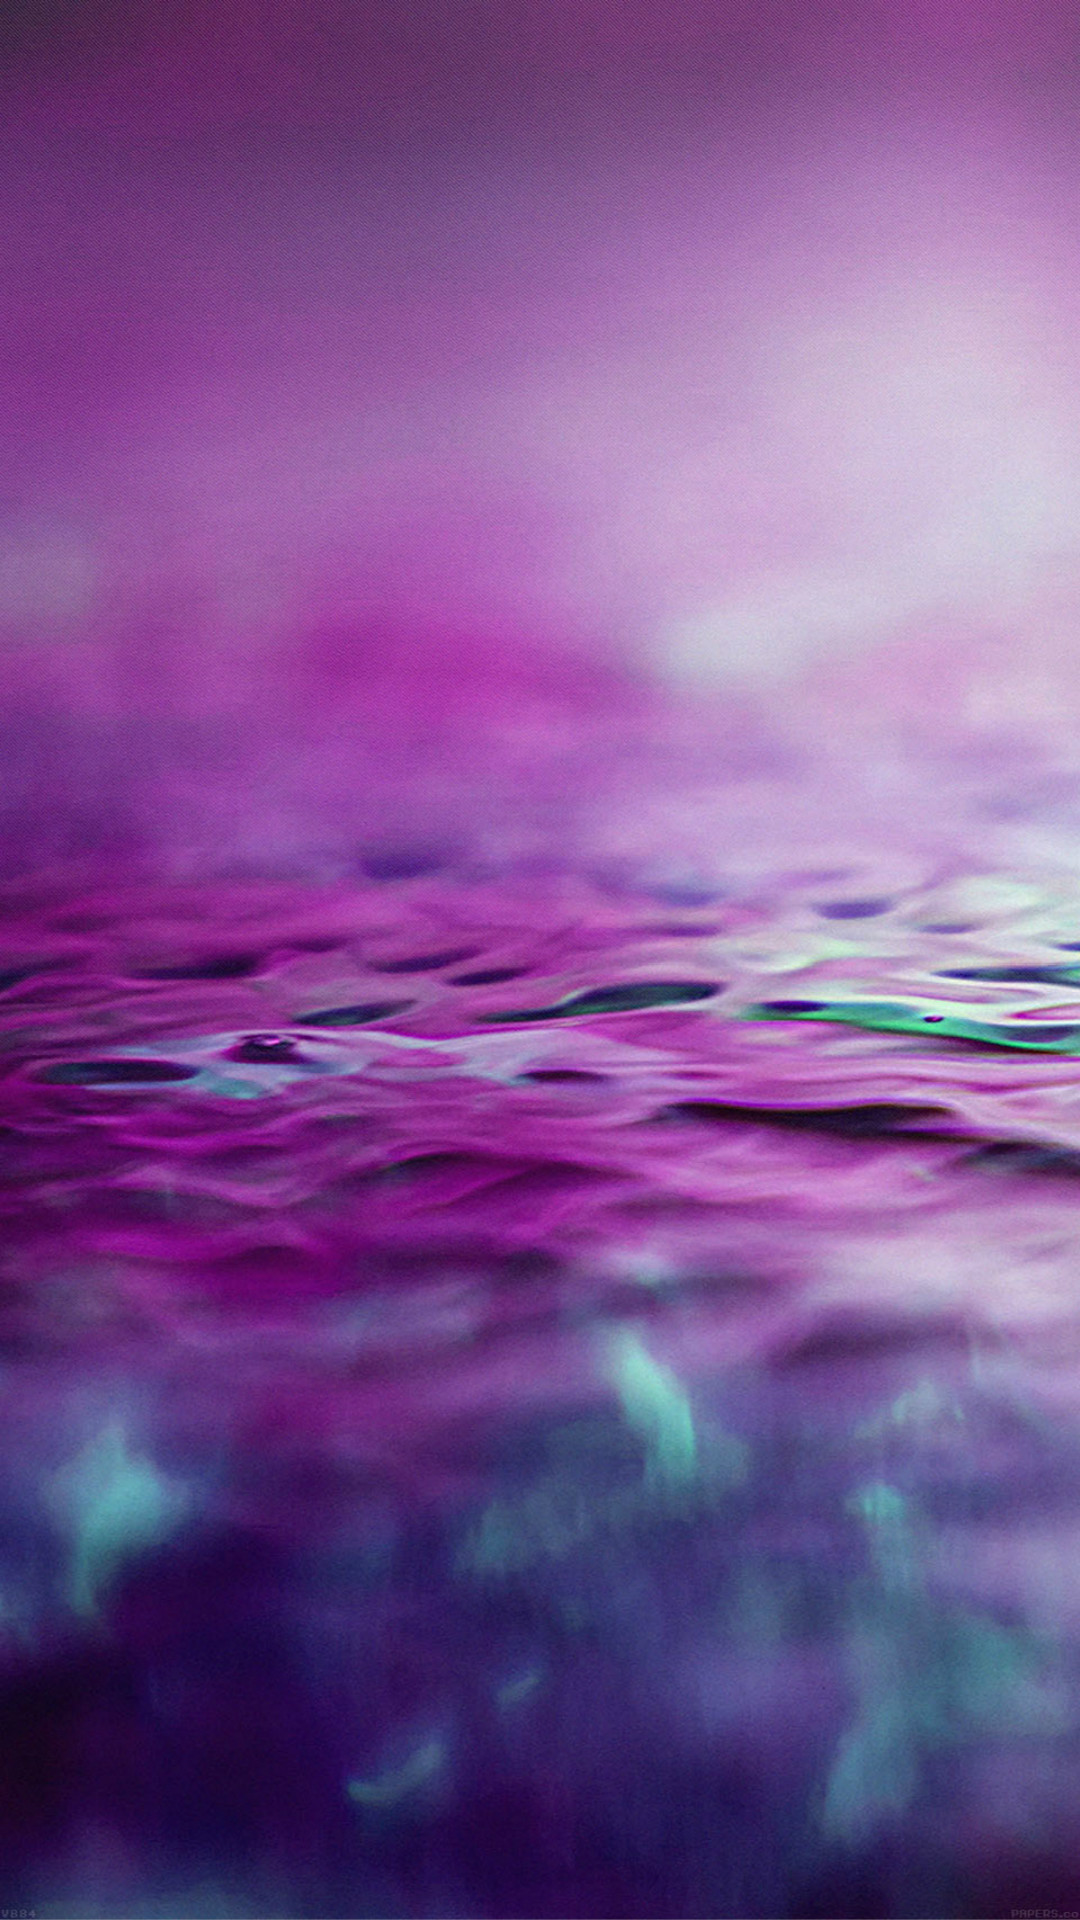 Chỉ cần một chút sự sáng tạo, những bức ảnh Abstract/Purple của chúng tôi sẽ đem lại cho bạn những hình ảnh đầy sức sống và tràn đầy màu sắc tuyệt đẹp. Hãy cùng chiêm ngưỡng nhé!